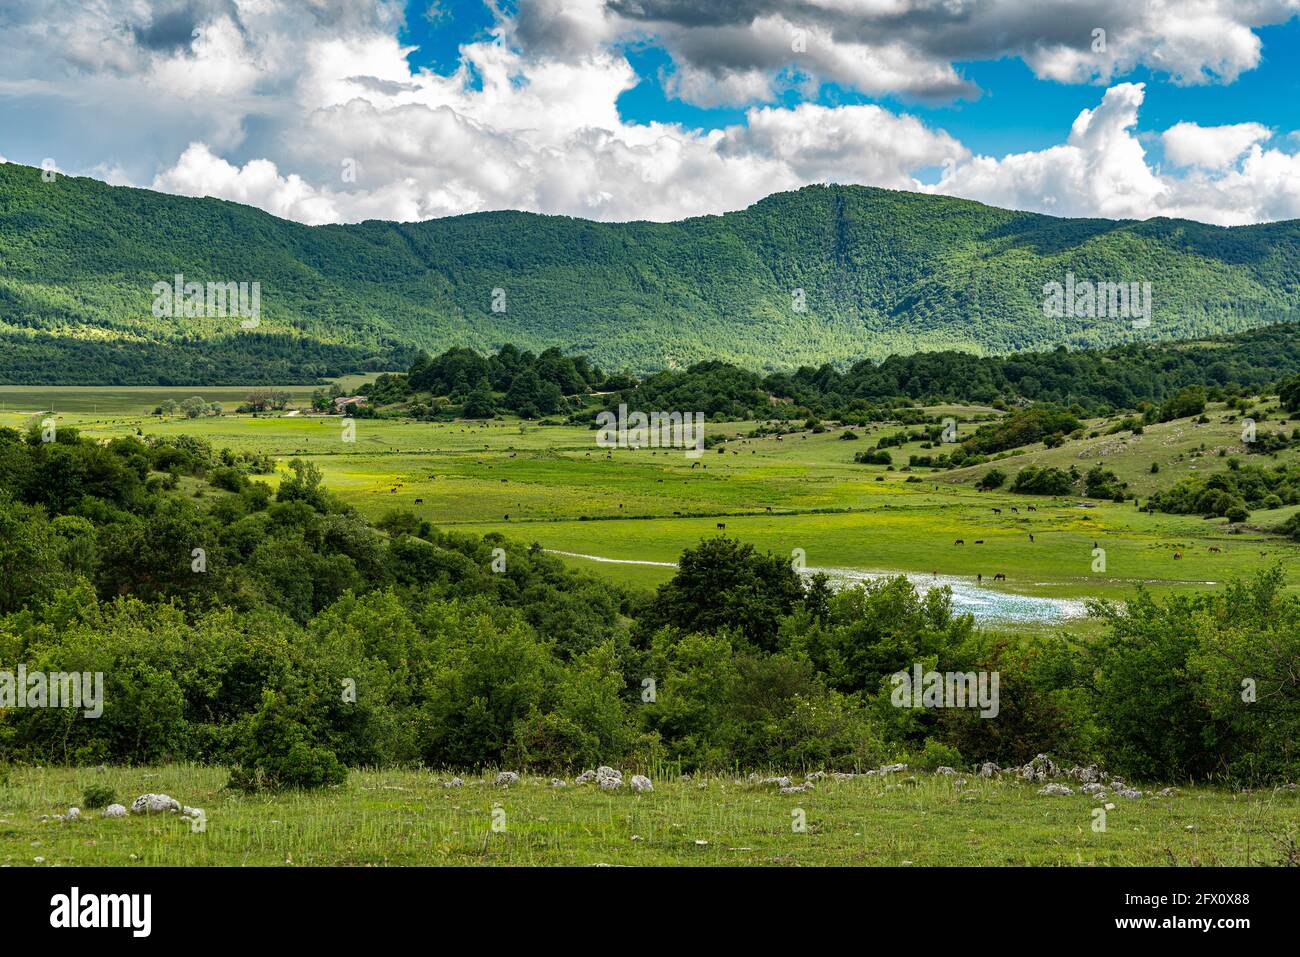 La vallée appelée Pantano della Zittola où la tourbe est produite pour produire de l'énergie. Montenero Valcocchiara, région de Molise, Italie, Europe Banque D'Images